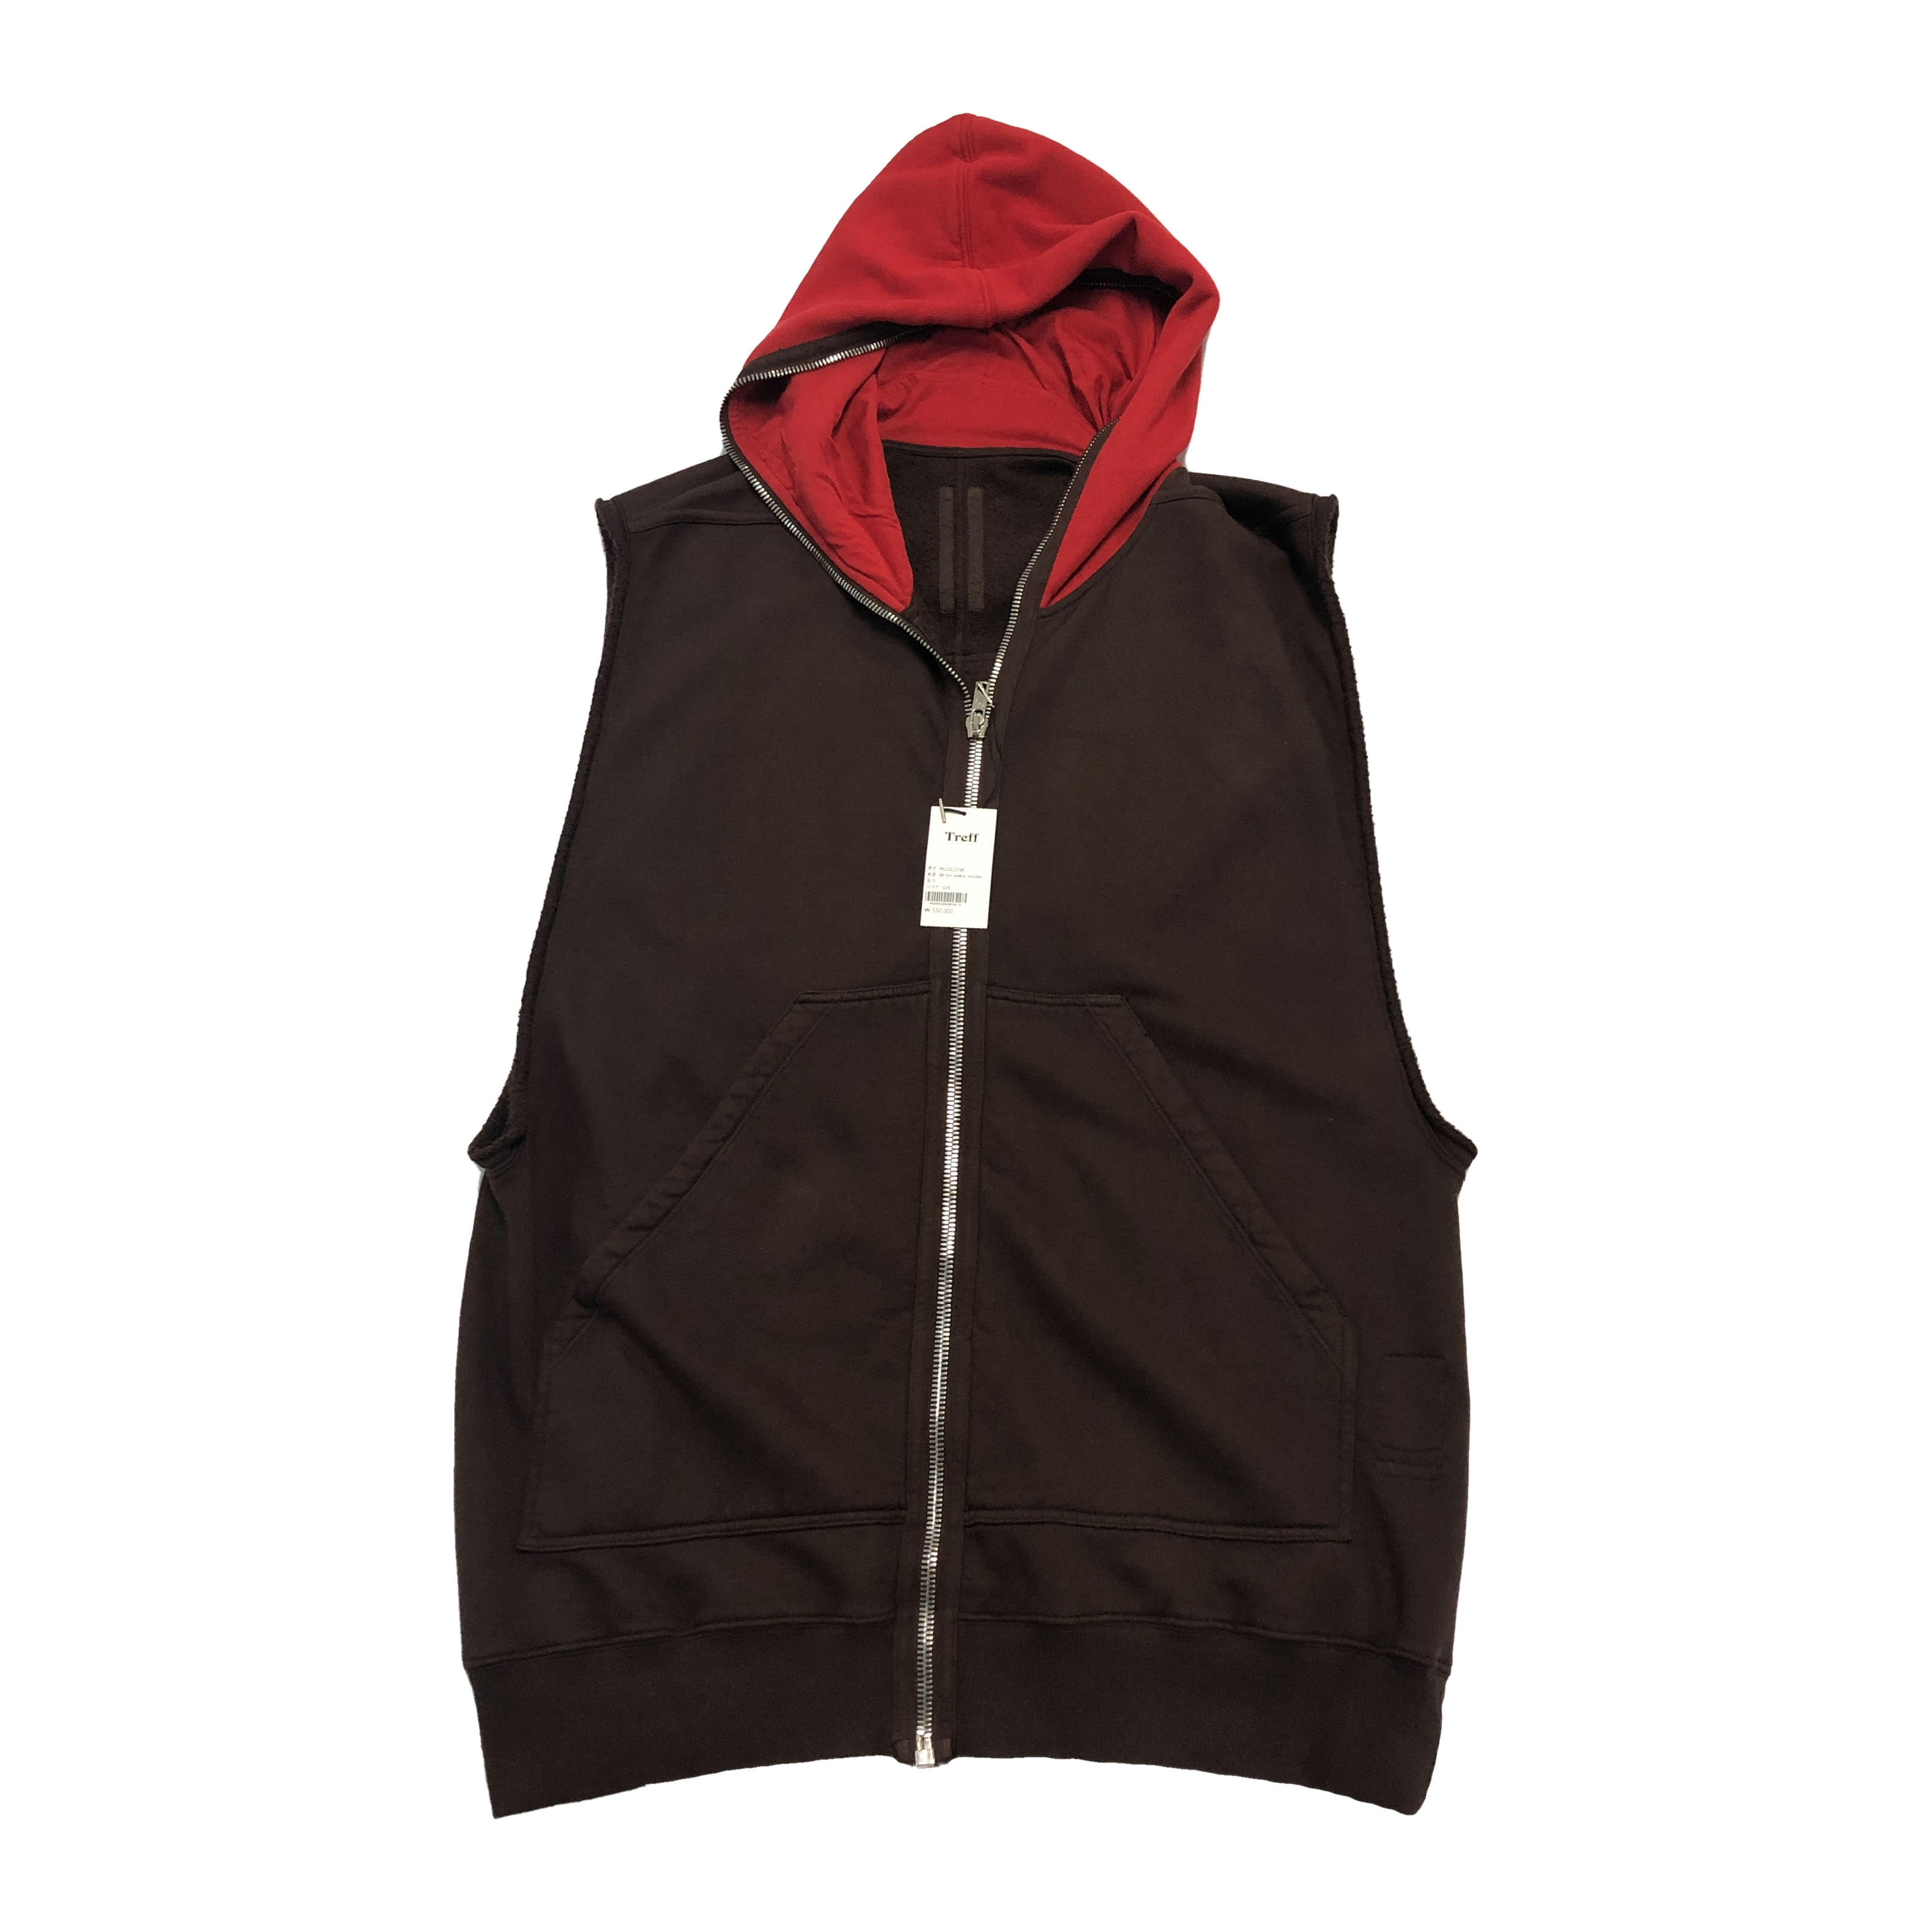 [Rick Owens] Brown Vest Jacket - Size L